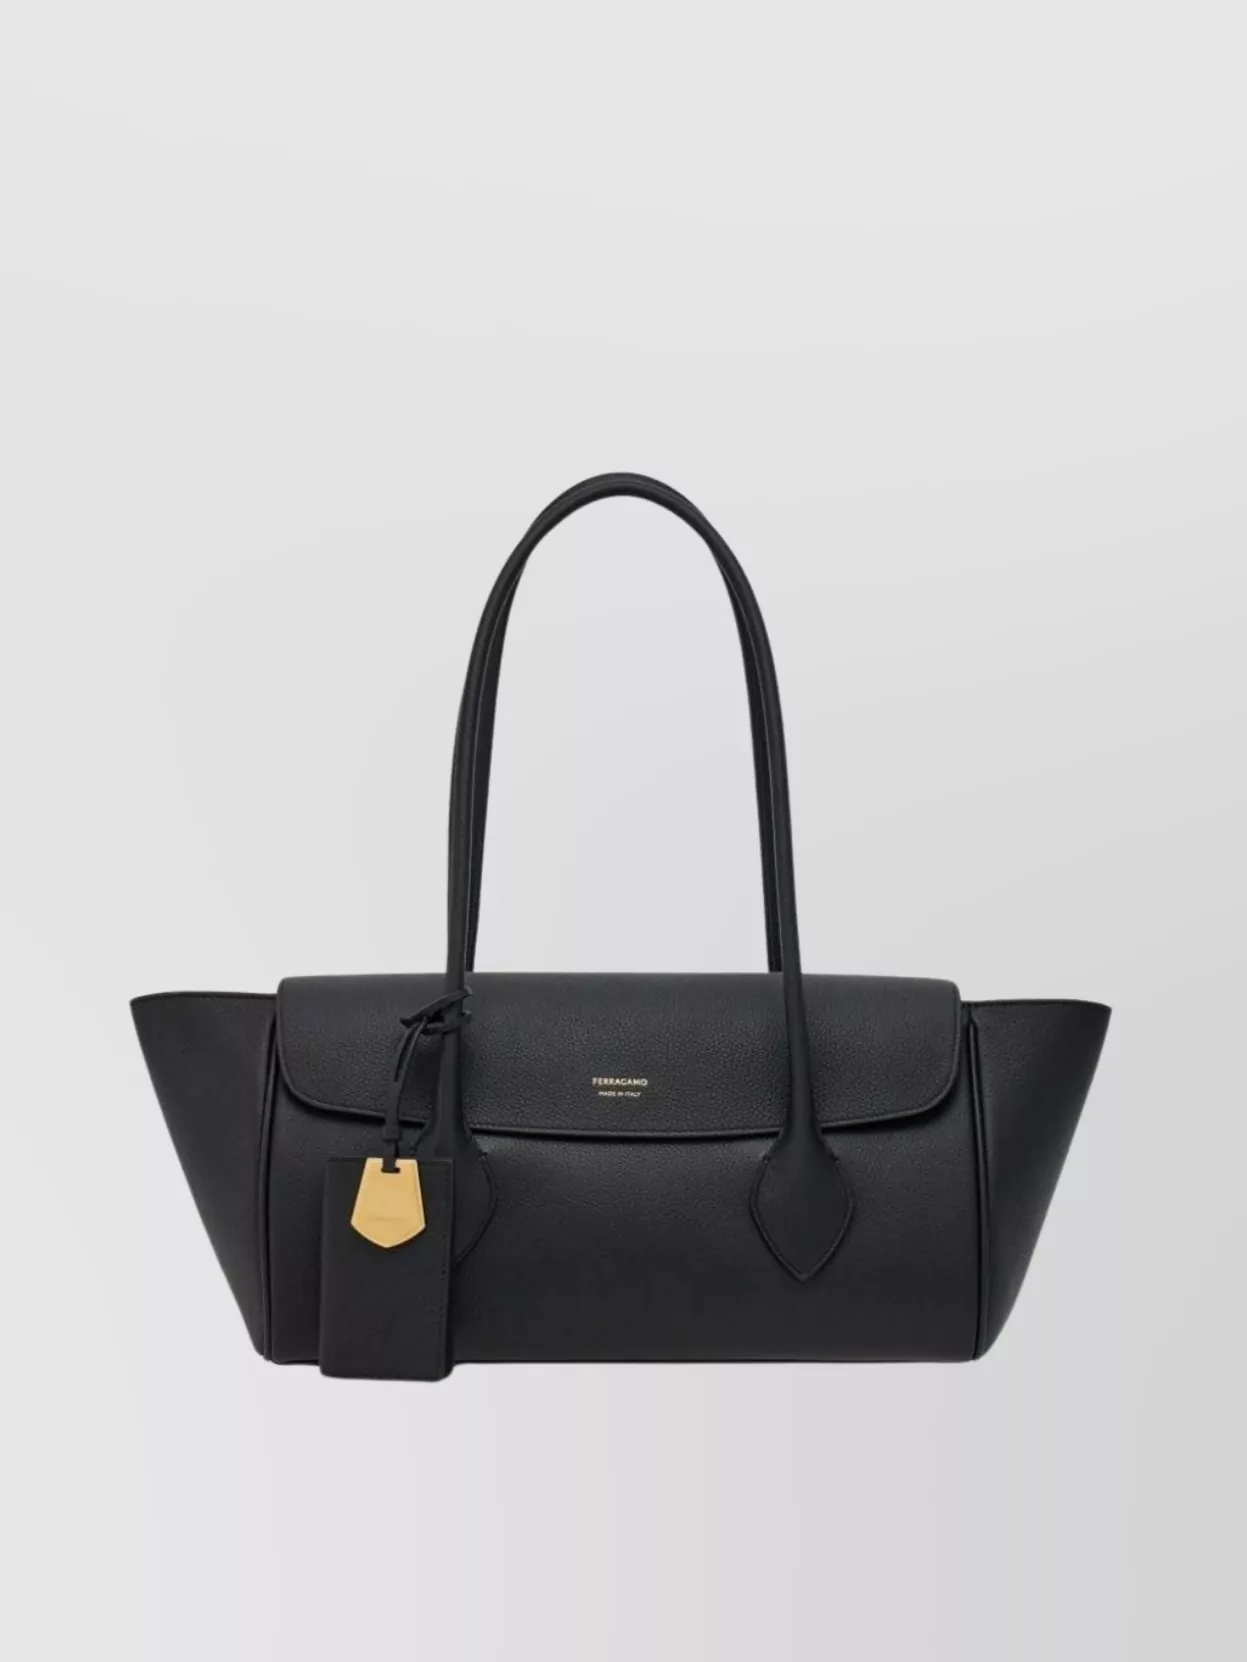 Ferragamo Top Foldover Shoulder Bag With Gold Hardware In Black